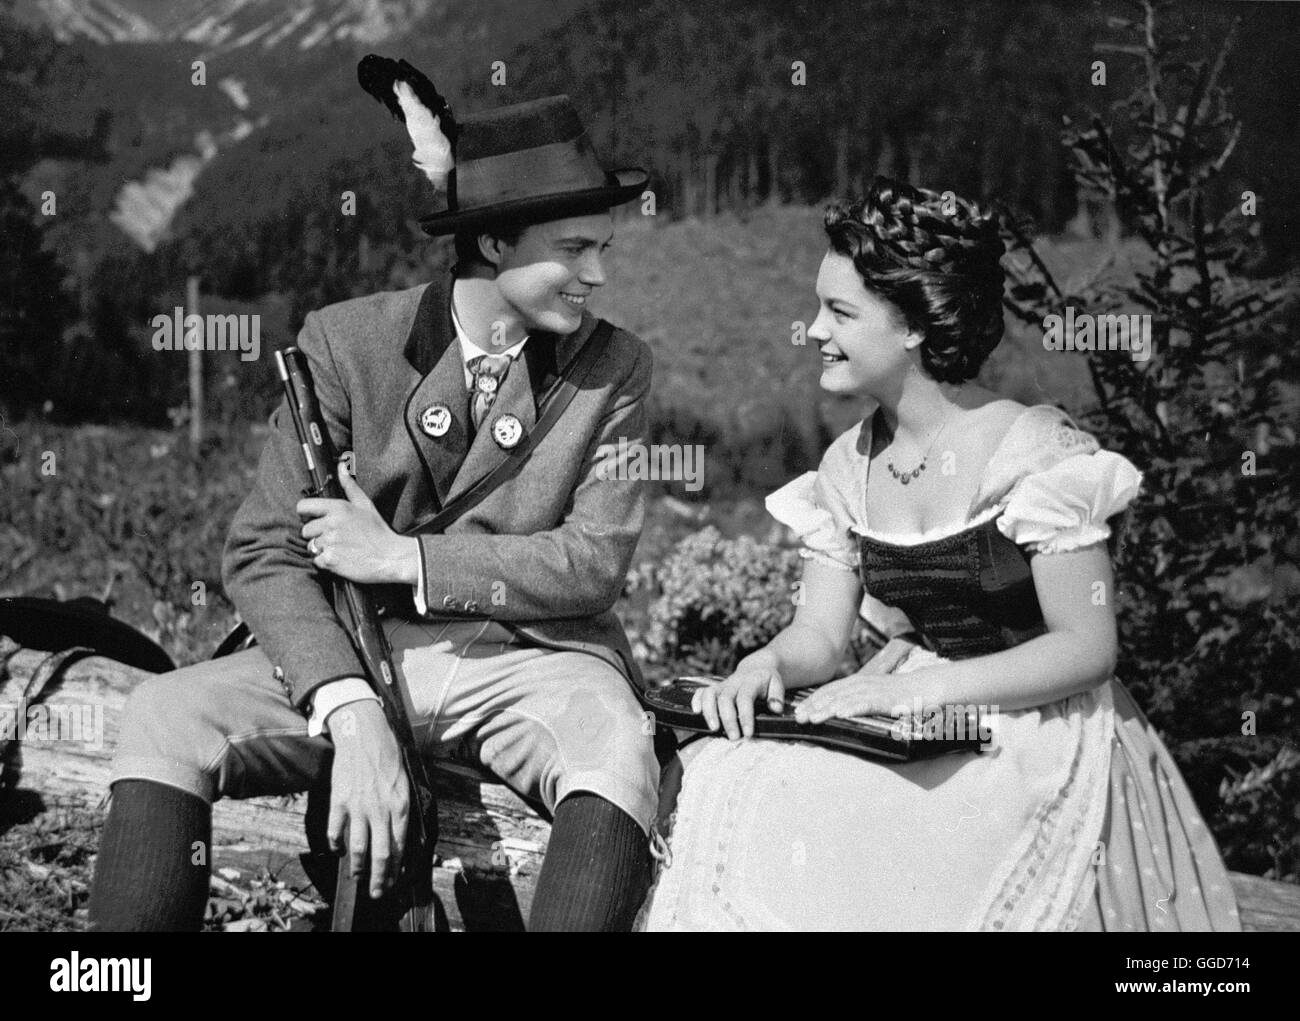 SISSI / Austria 1955 / Ernst Marischka Die junge Sissi (ROMY SCHNEIDER) und  Kaiser Franz Joseph (KARLHEINZ BÖHM). Regie: Ernst Marischka Stock Photo -  Alamy